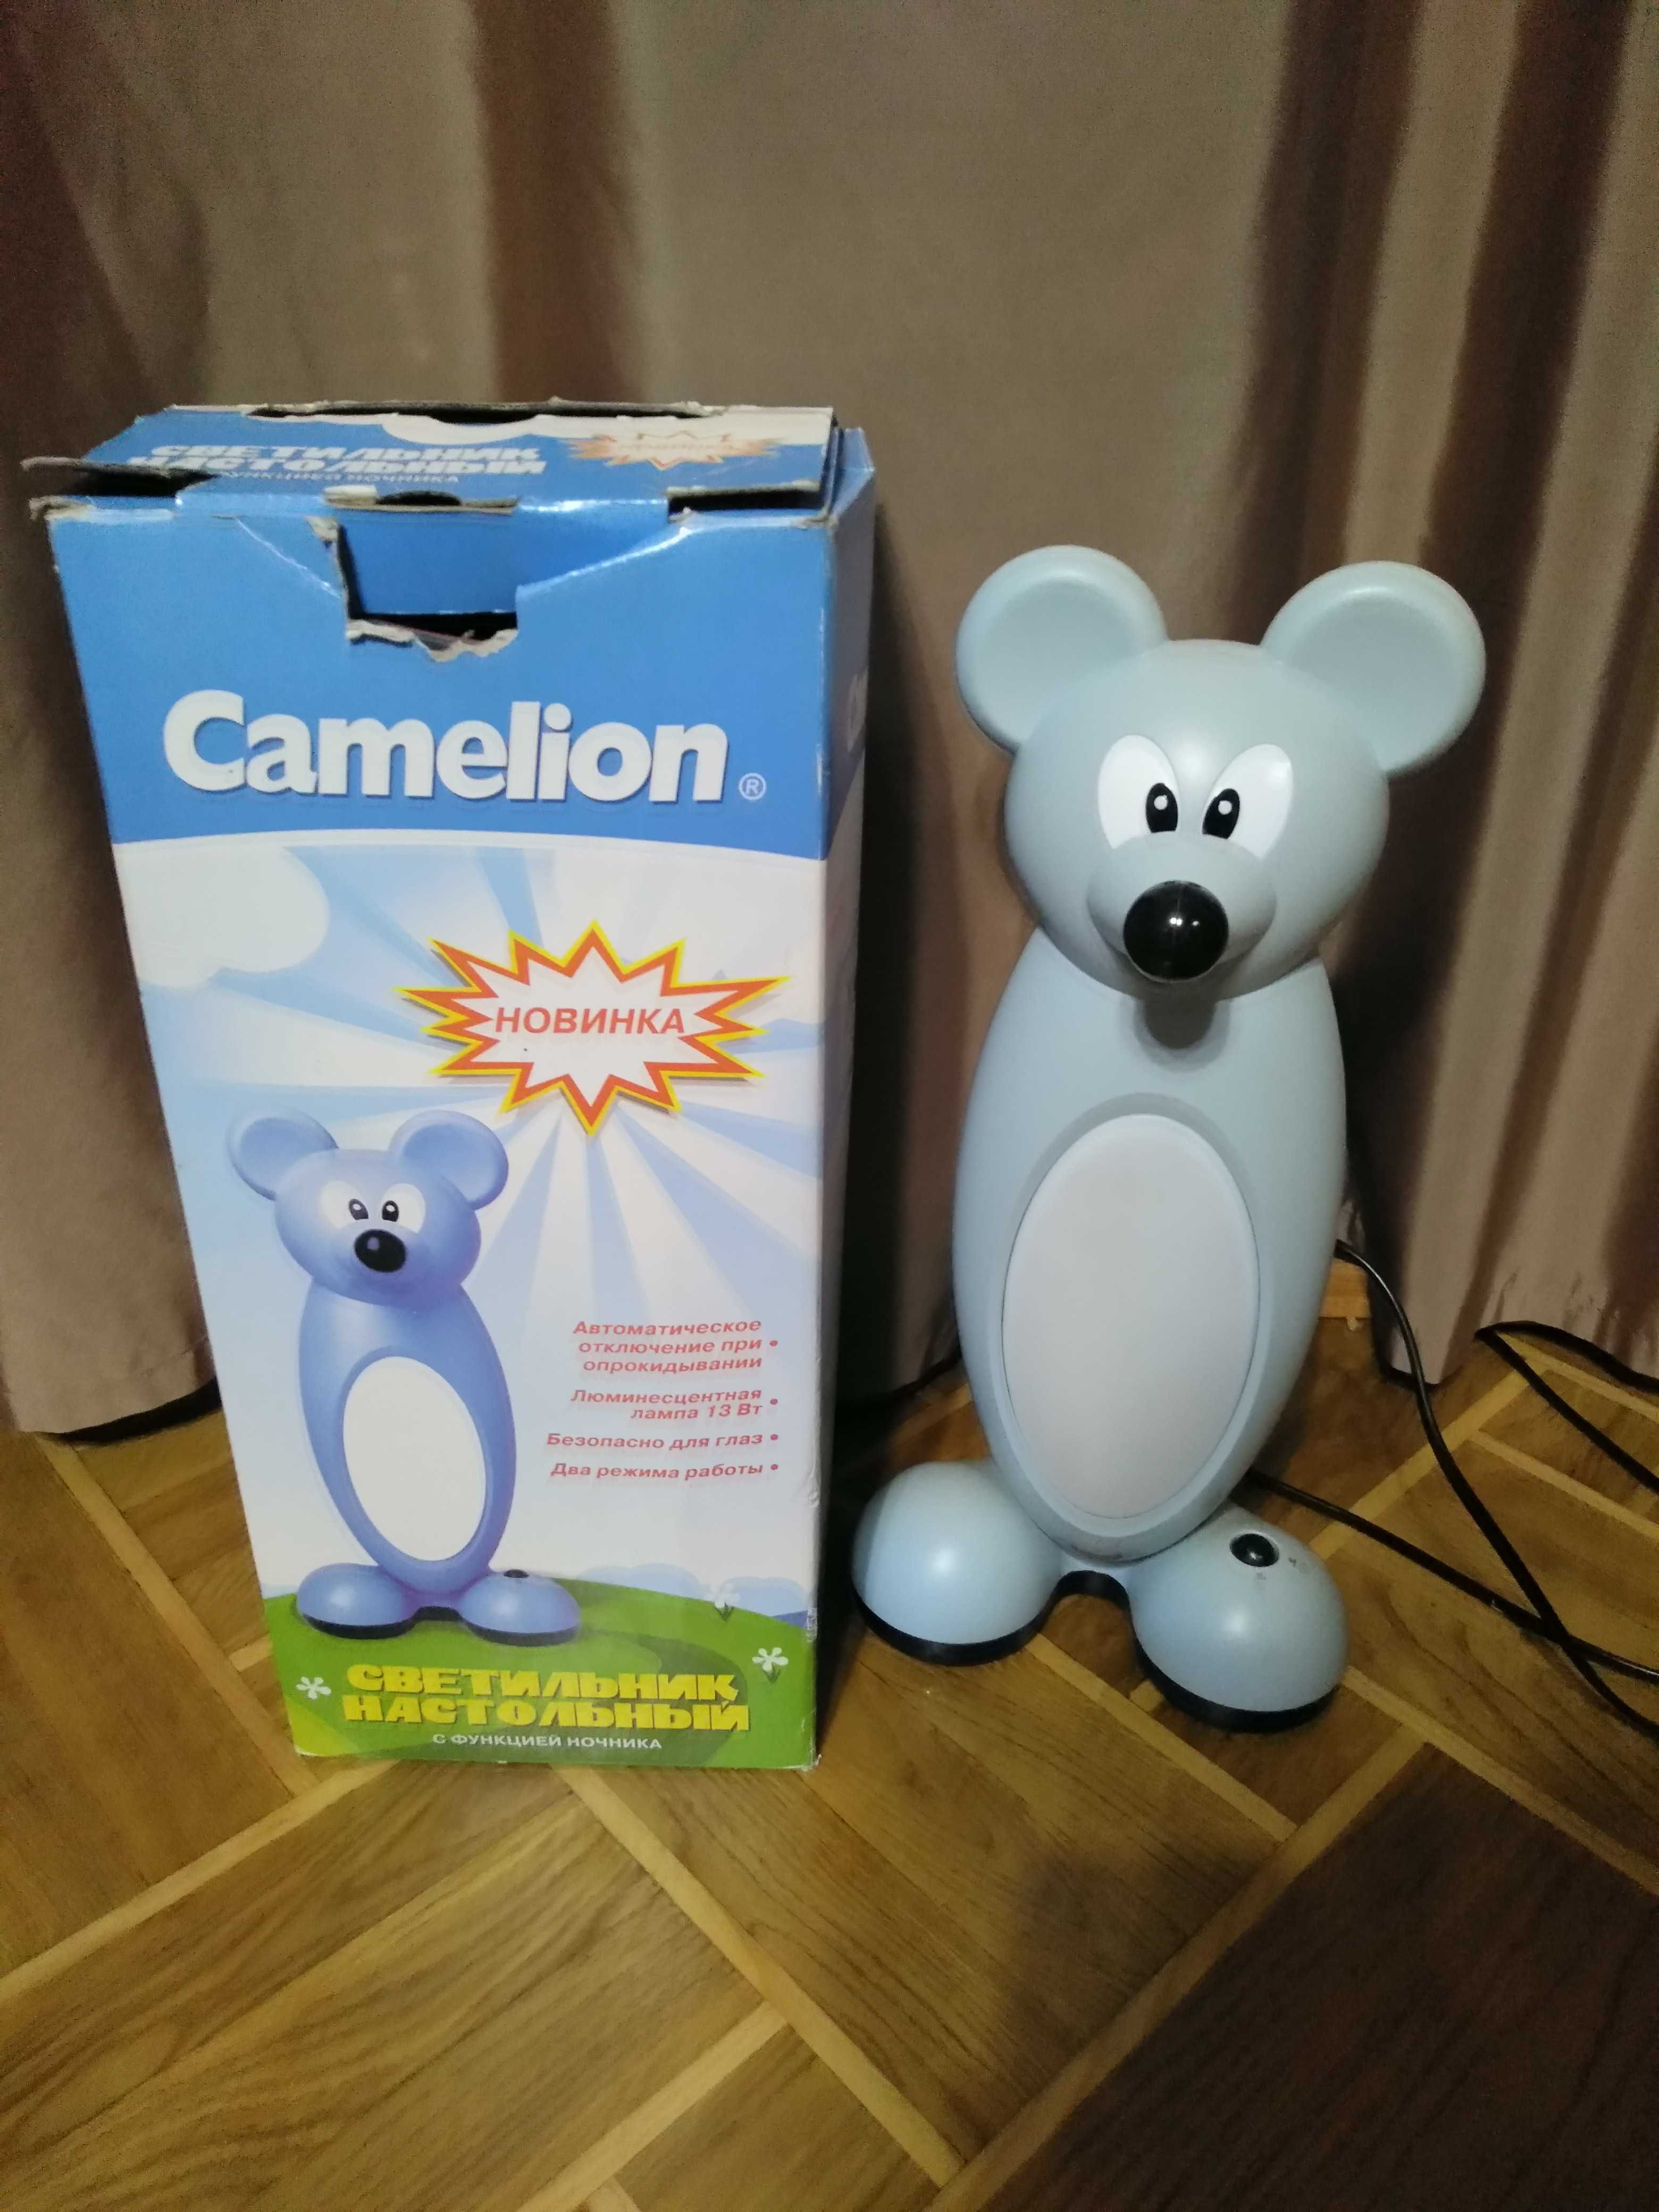 Детская настольная лампа-ночник мышка Camelion  KD 505